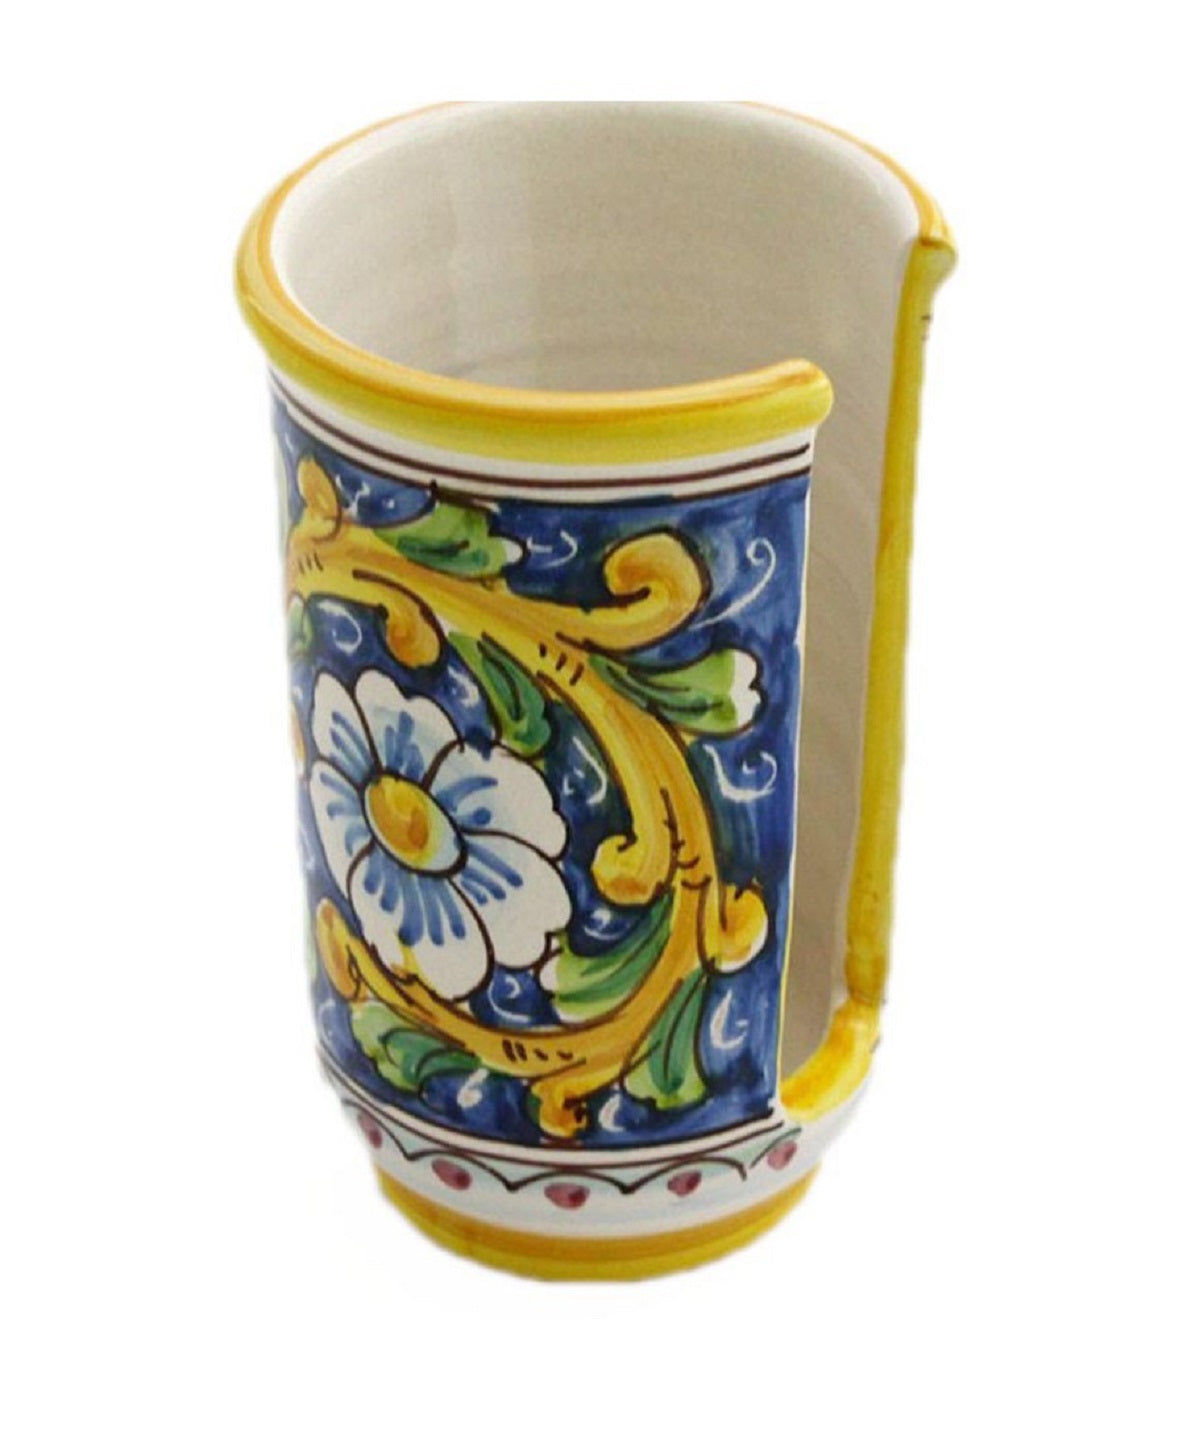 Portabicchieri piccolo in ceramica decorata a mano da ceramisti siciliani barocco art 18